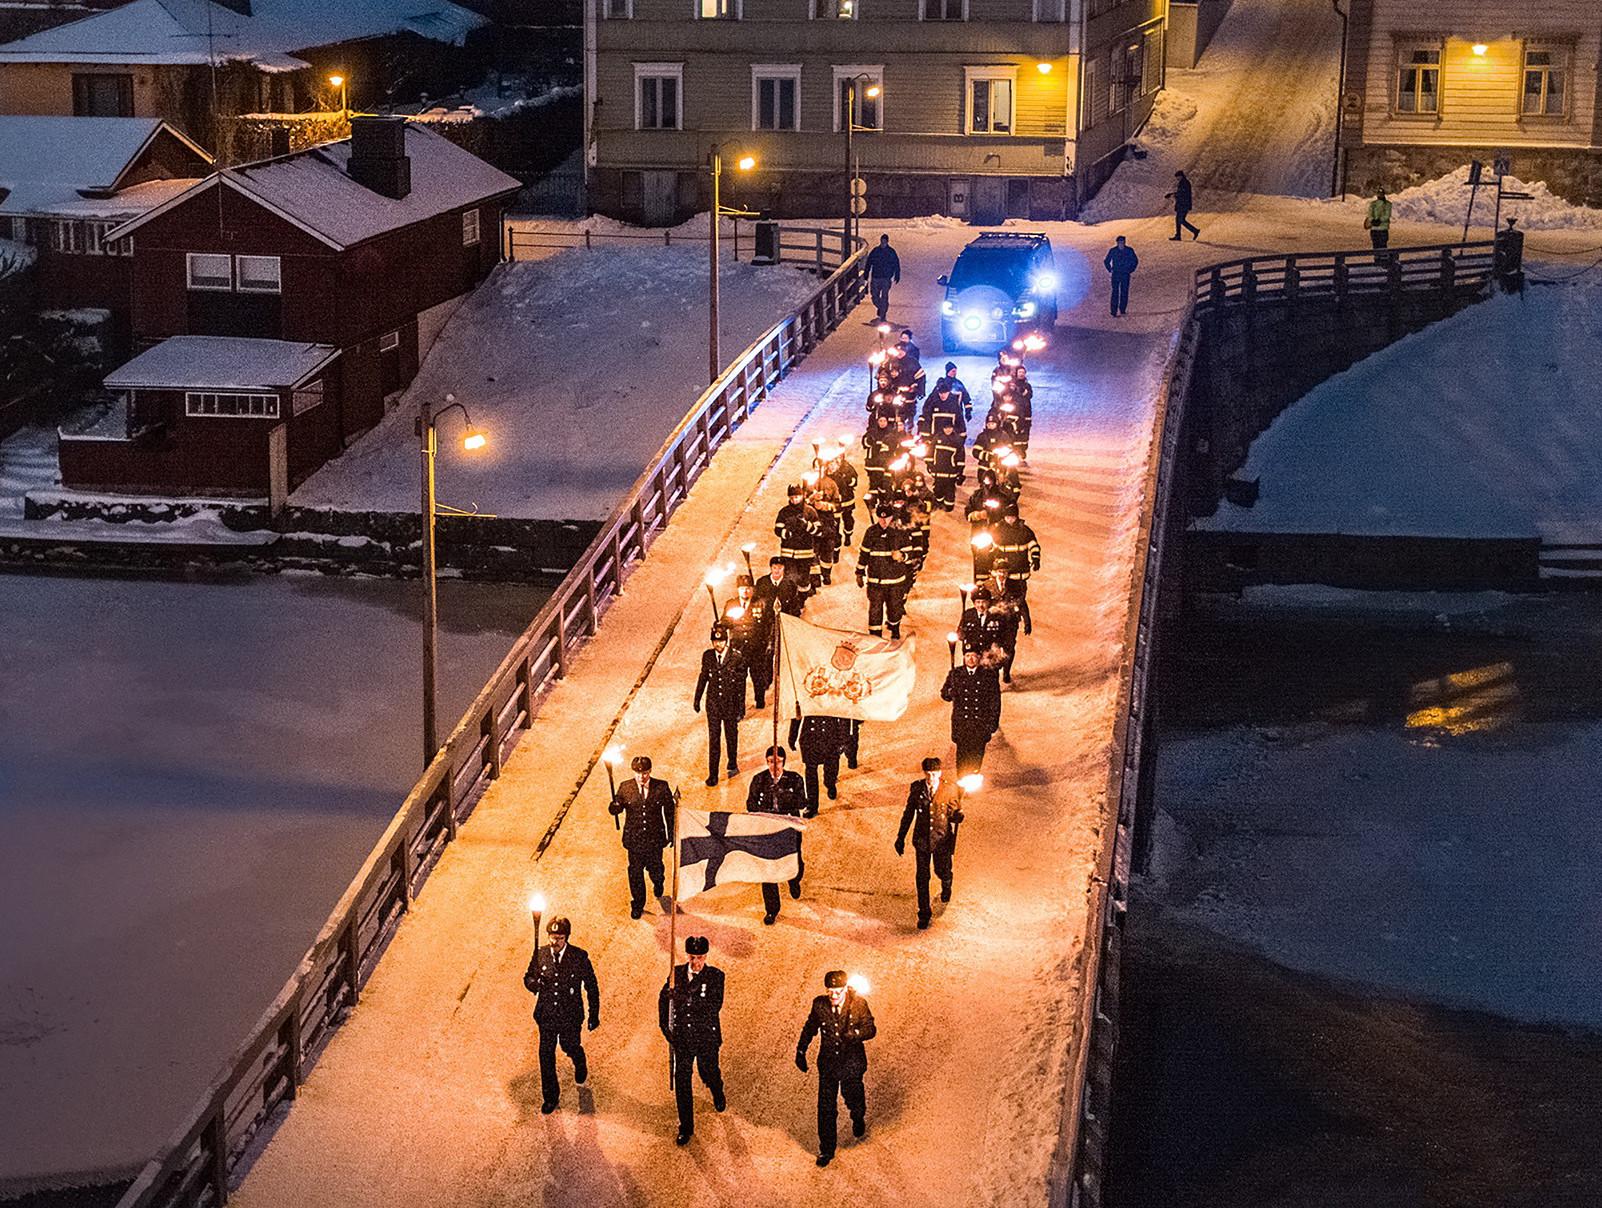 Runeberginpäivän soithukulkue kävelee Porvoon vanhan kaupungin sillan yli. Edessä mies joka pitää käsissään Suomen lippua.